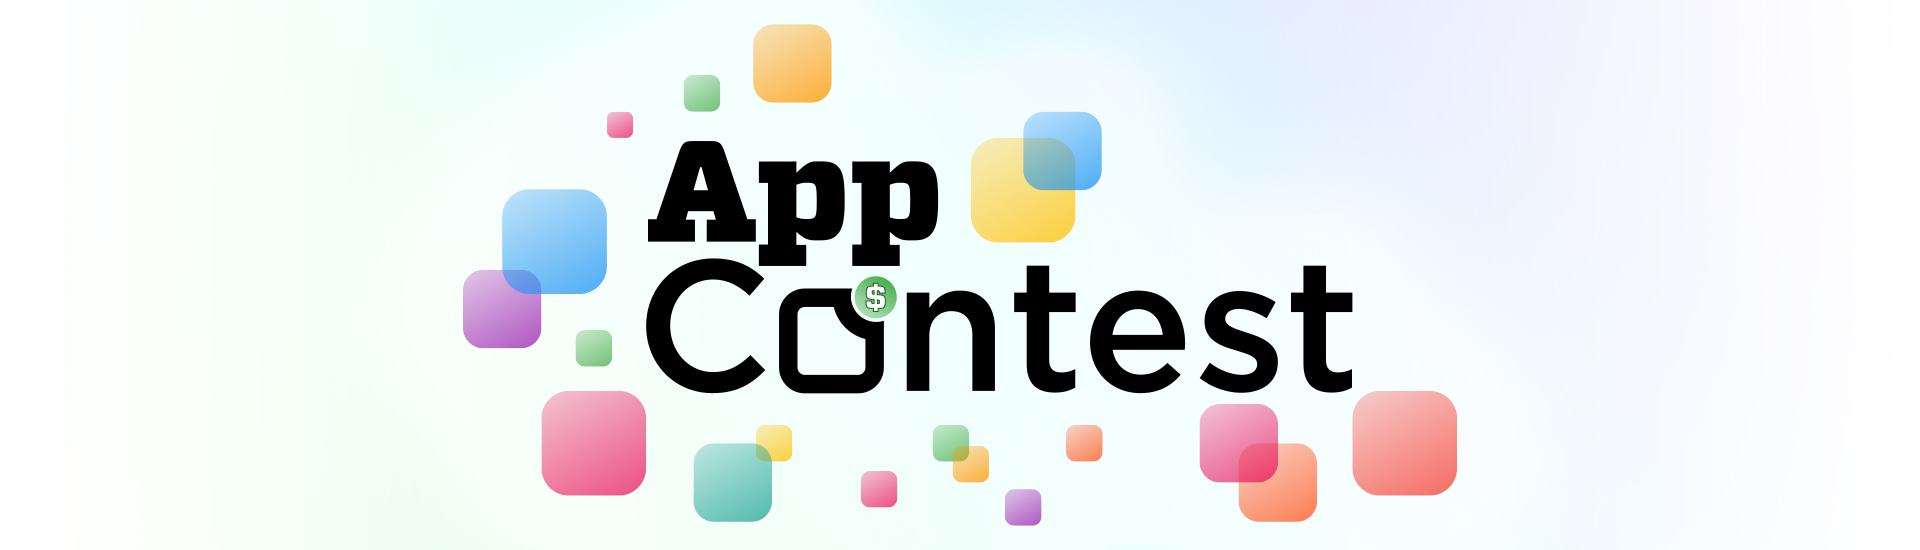 app contest 2019 graphic